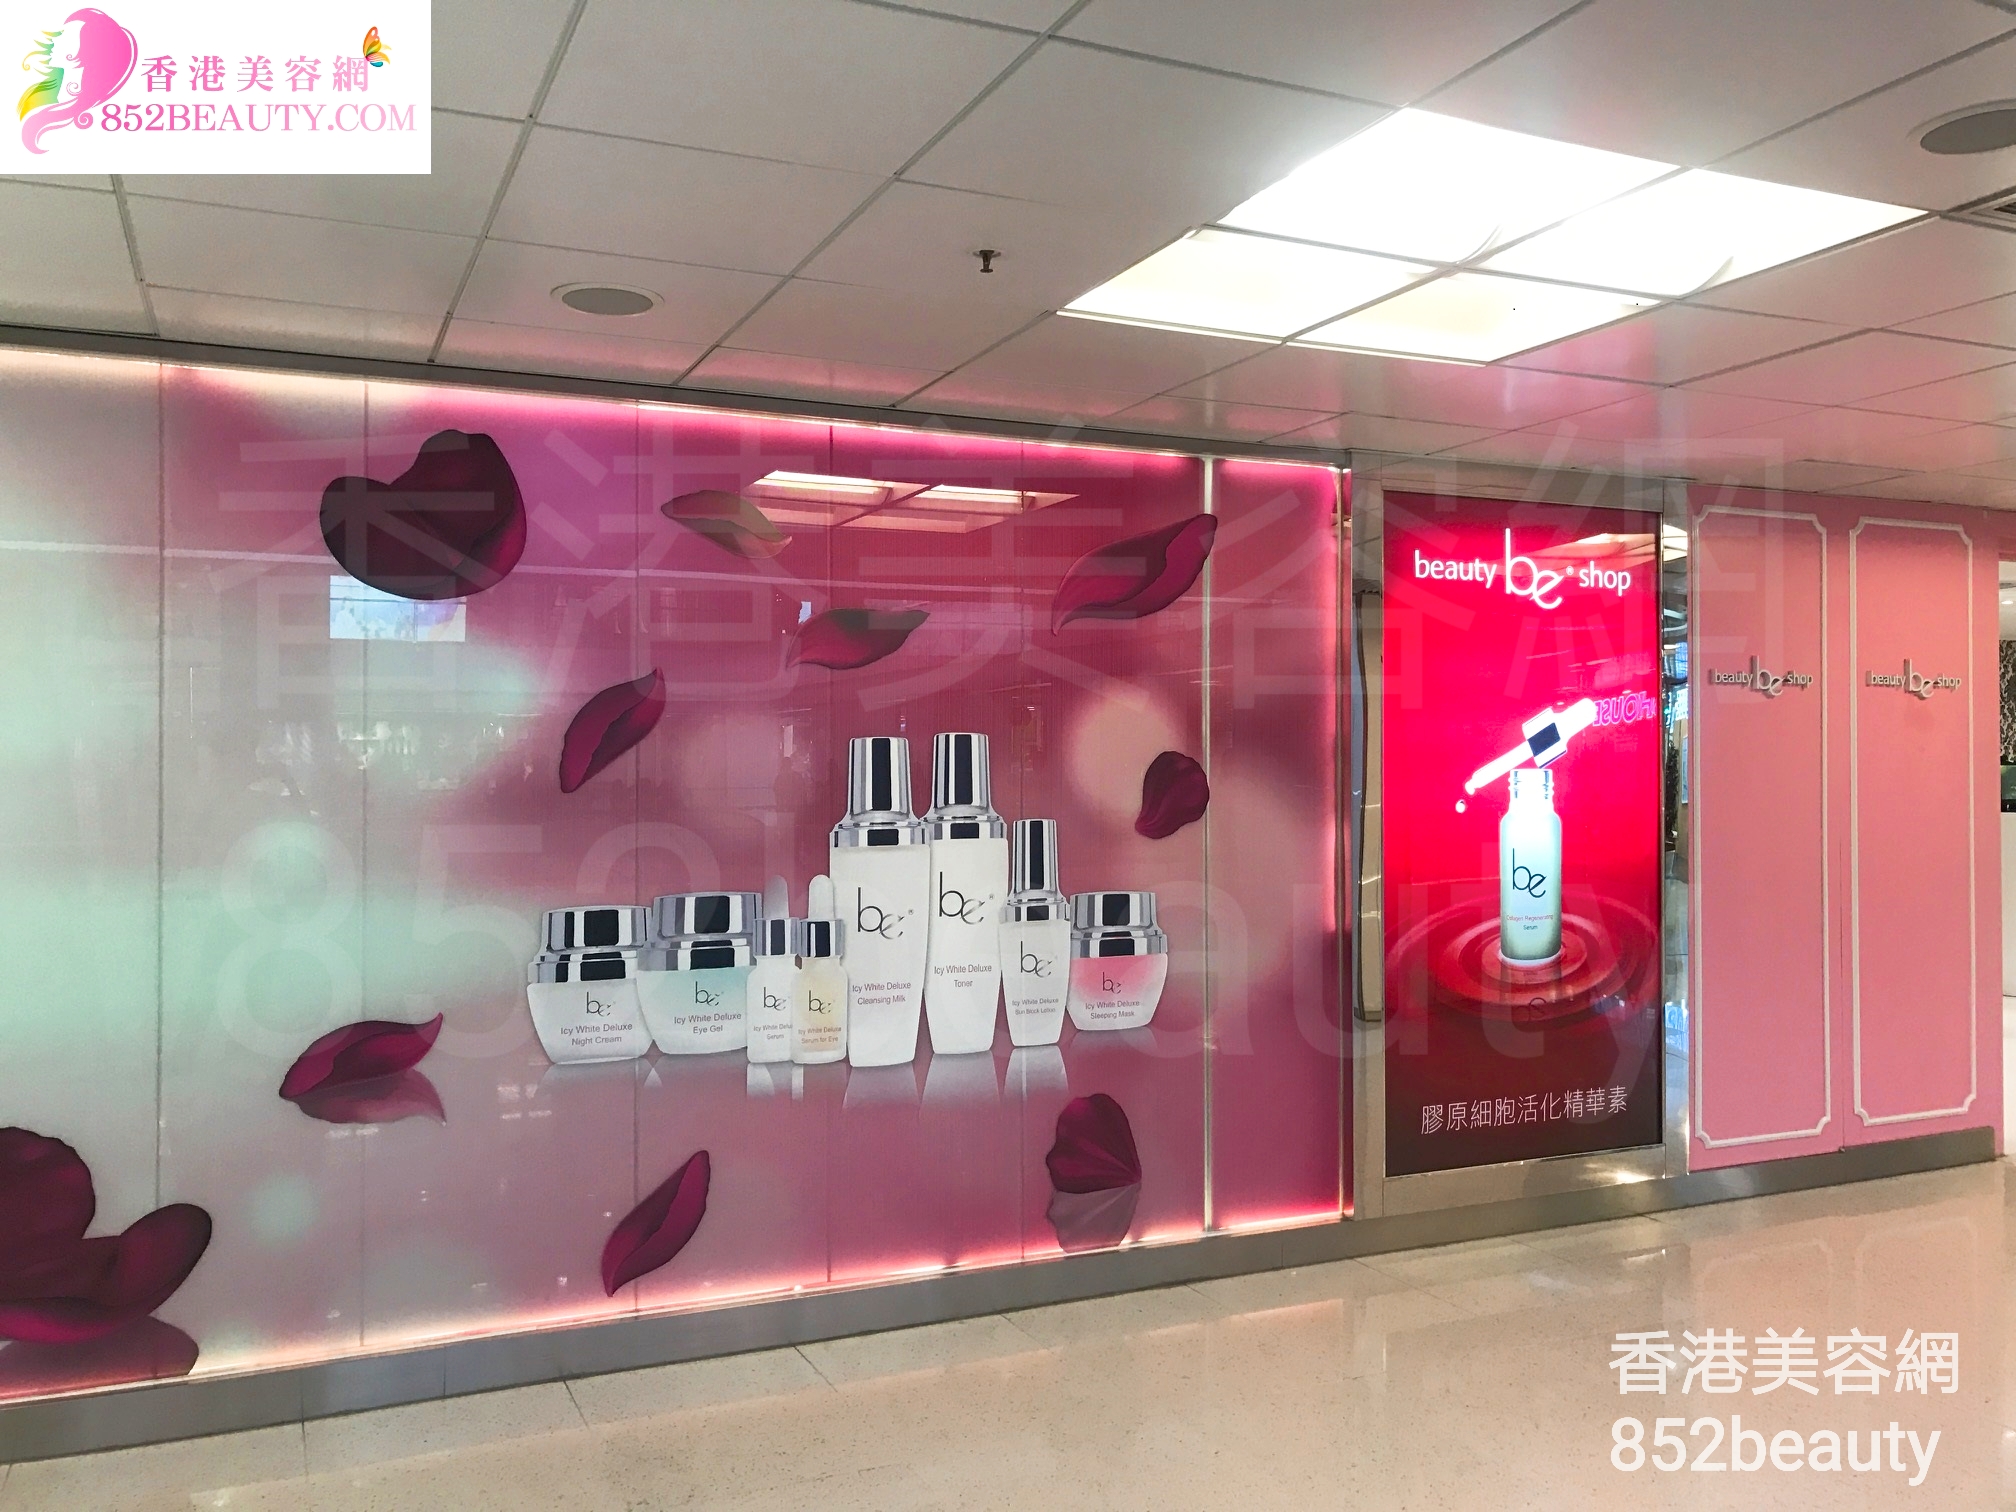 美甲: be beauty shop (大埔廣場)